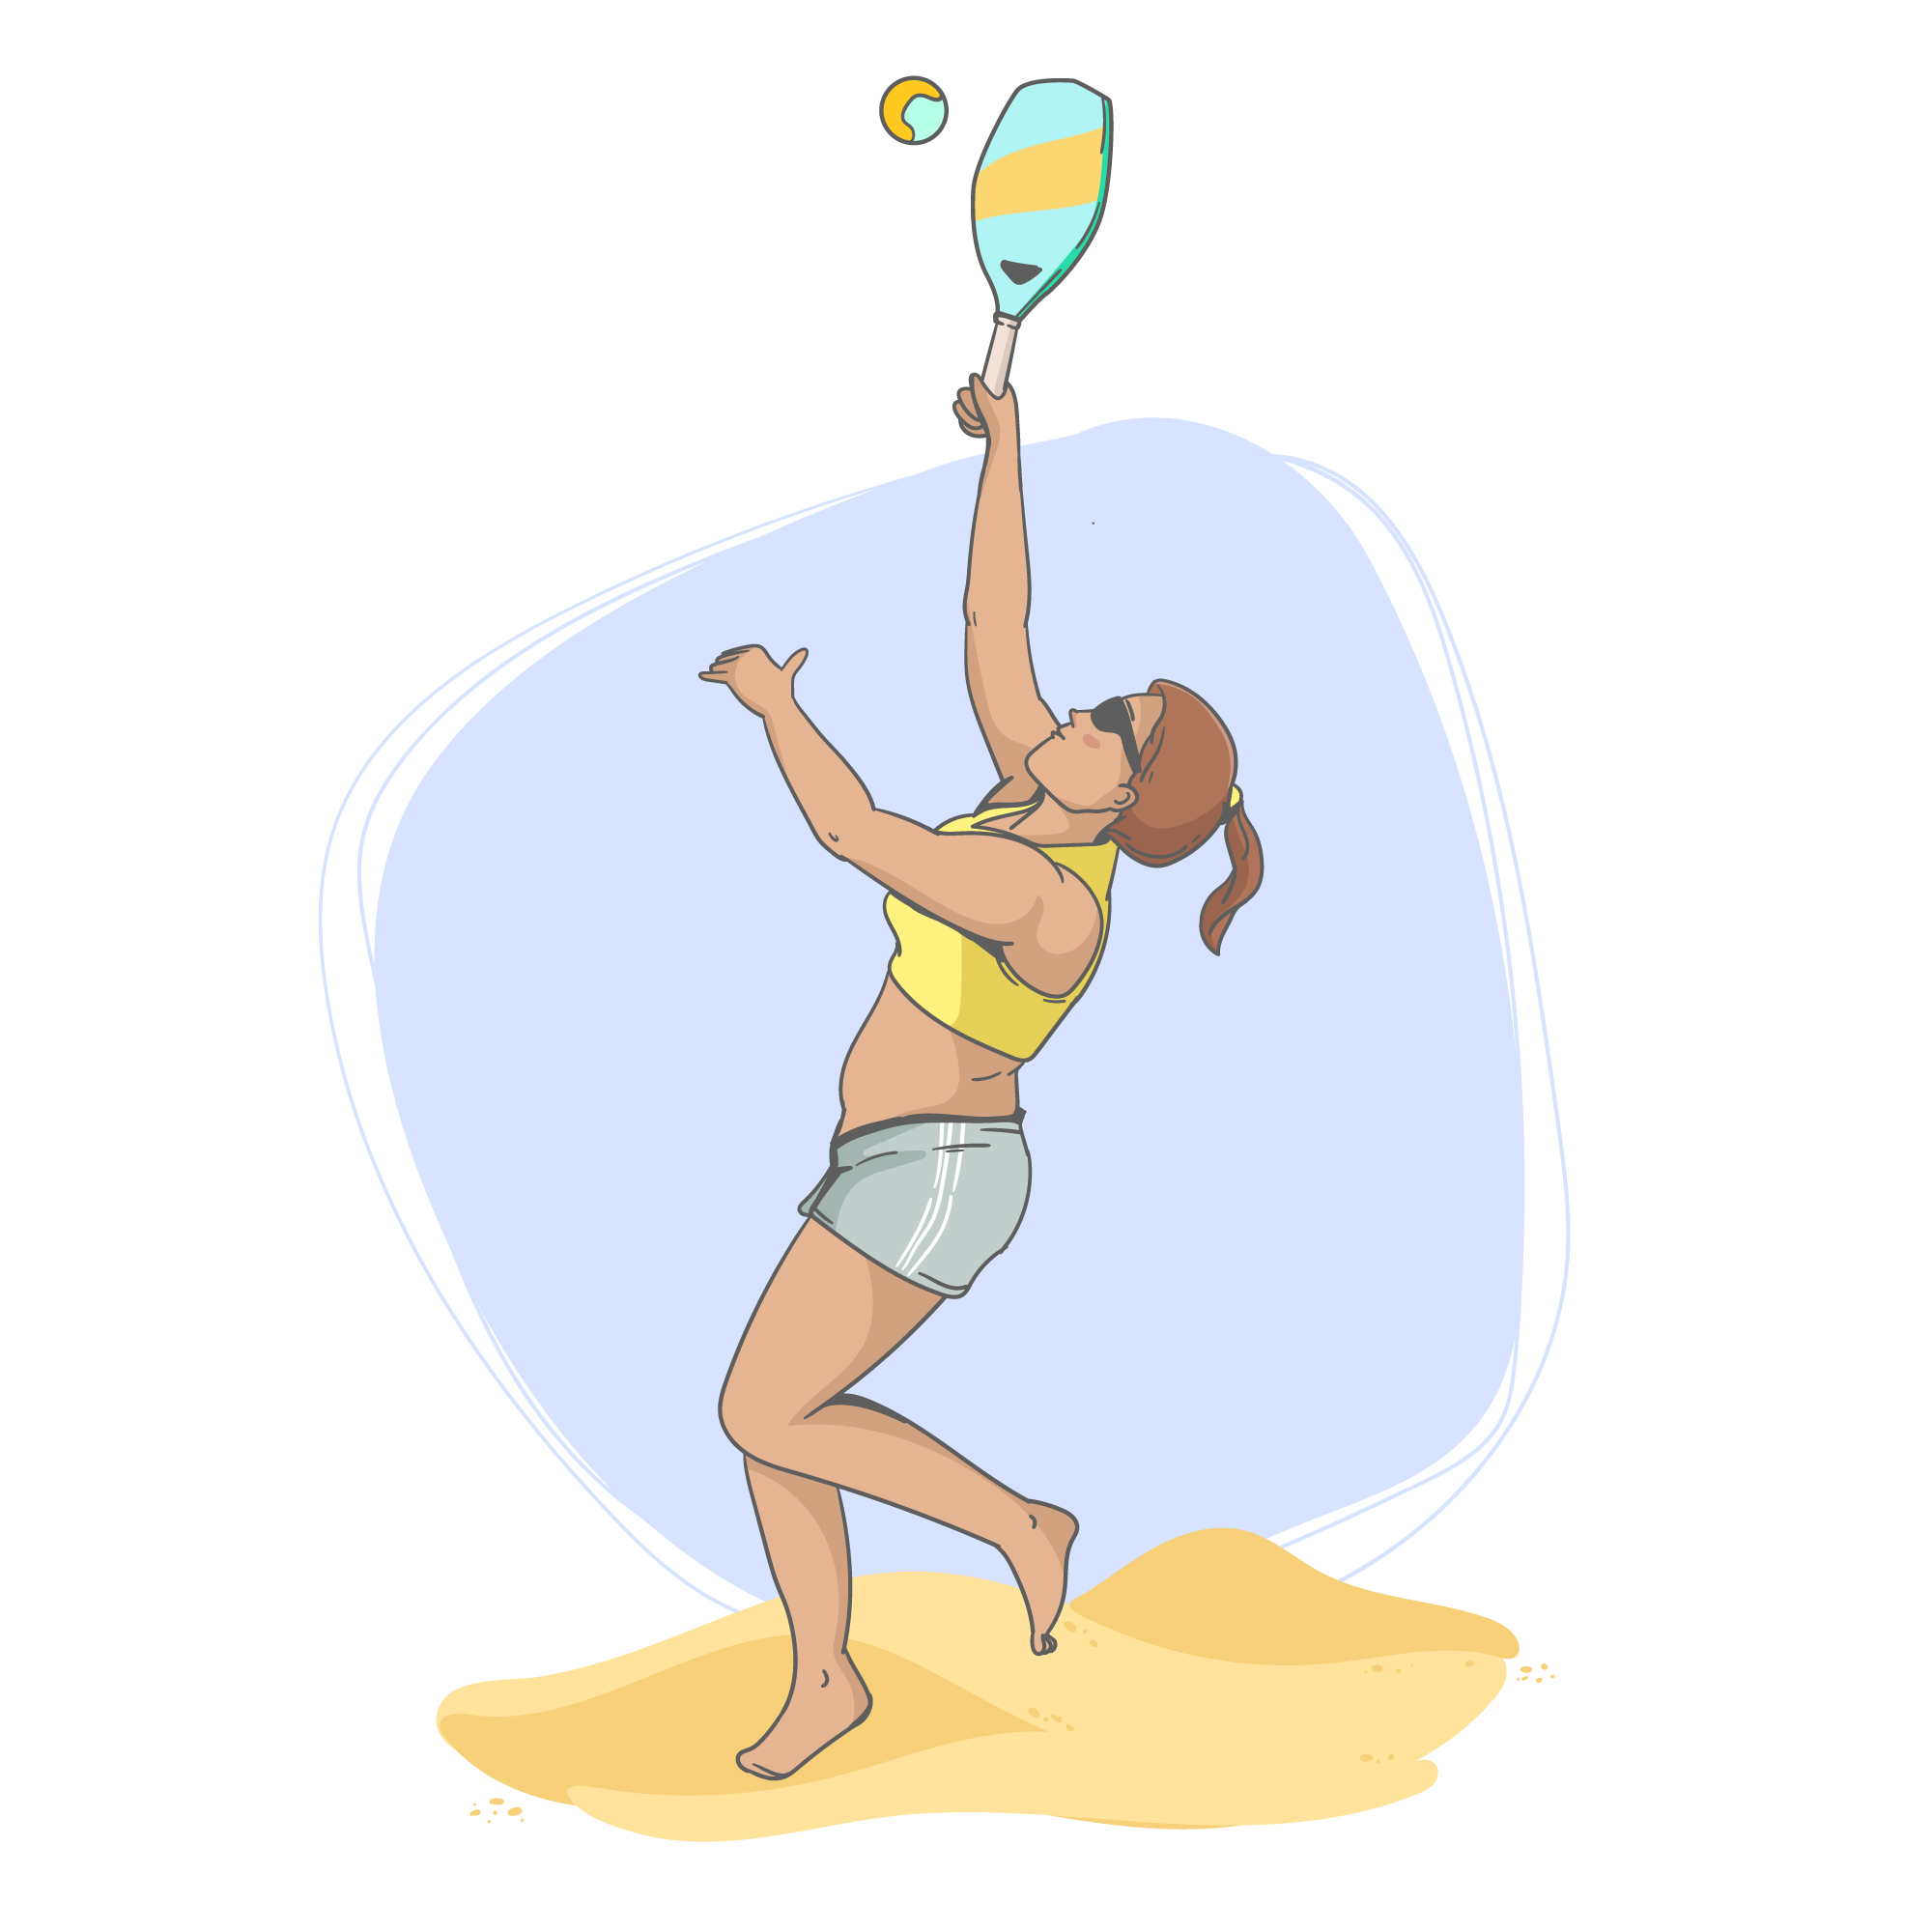 Desenho de uma mulher jogando beach tennis, com uma raquete na mão e olhando para cima, onde a bolinha se encontra